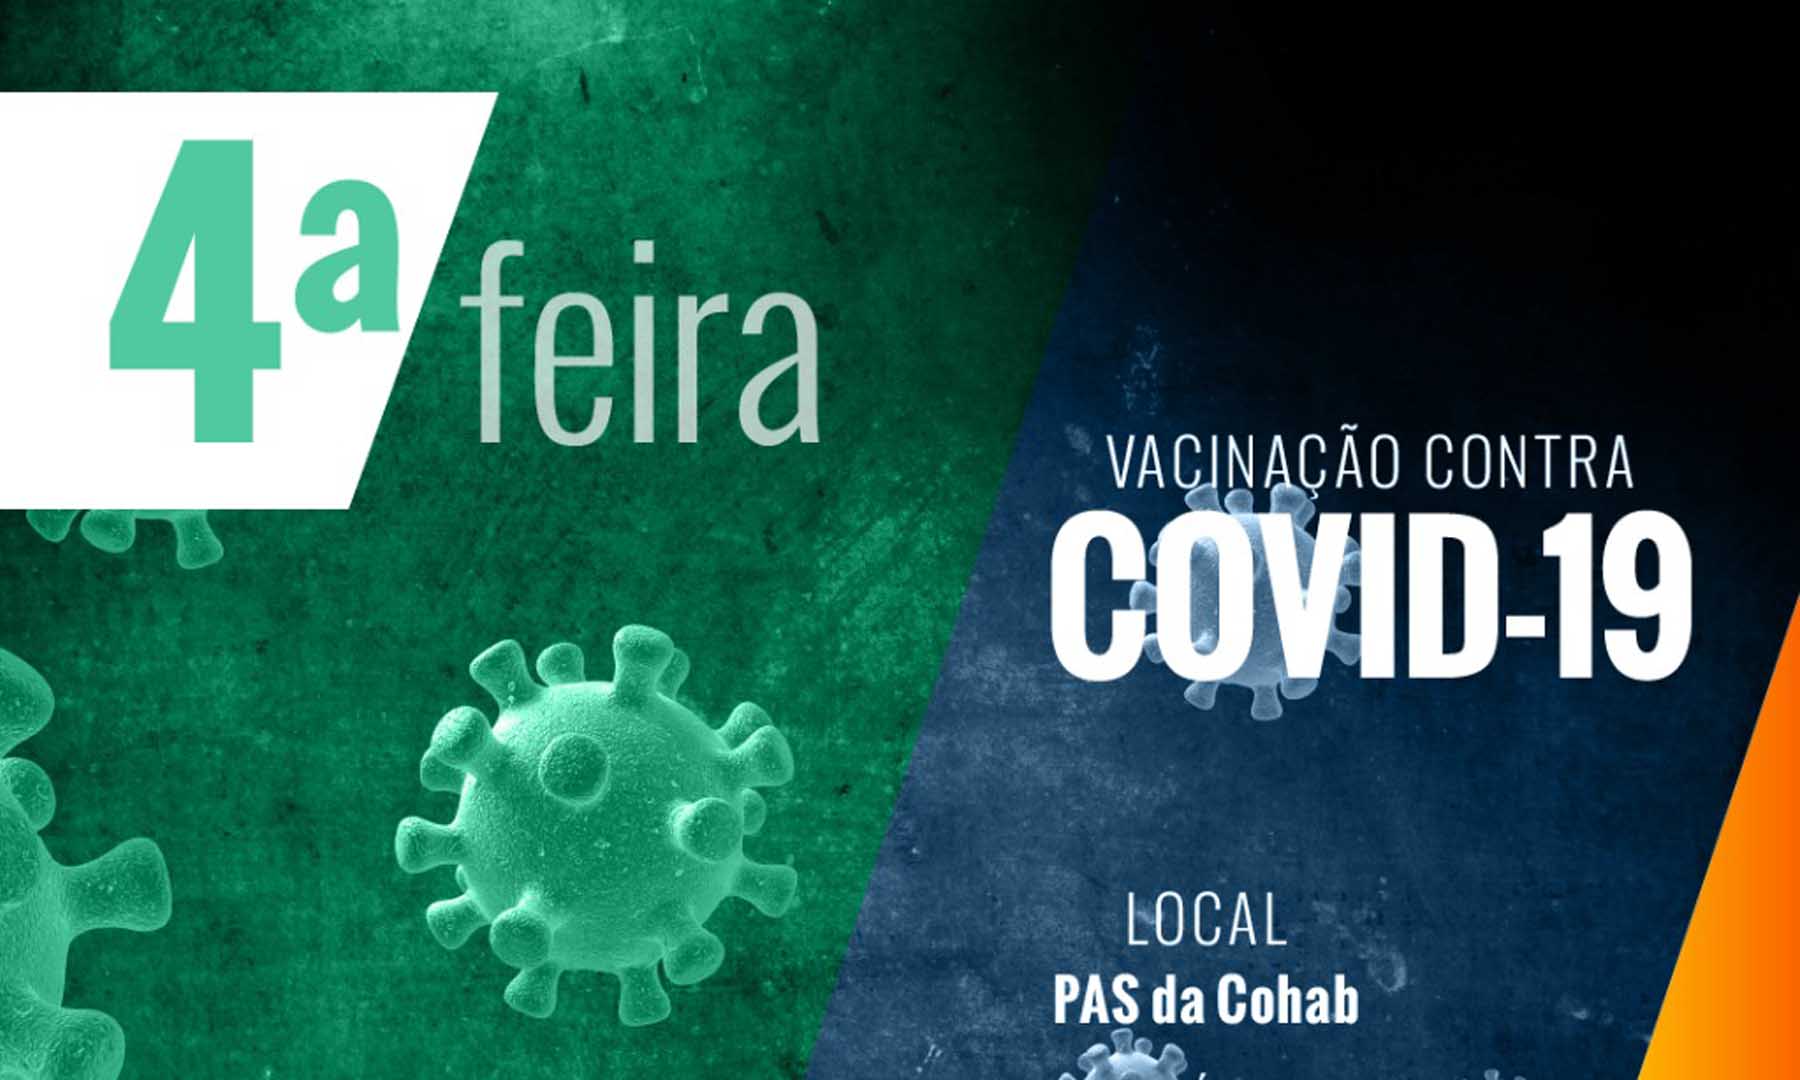 VACINAÇÃO COVID-19 - DIA 08 DE FEVEREIRO